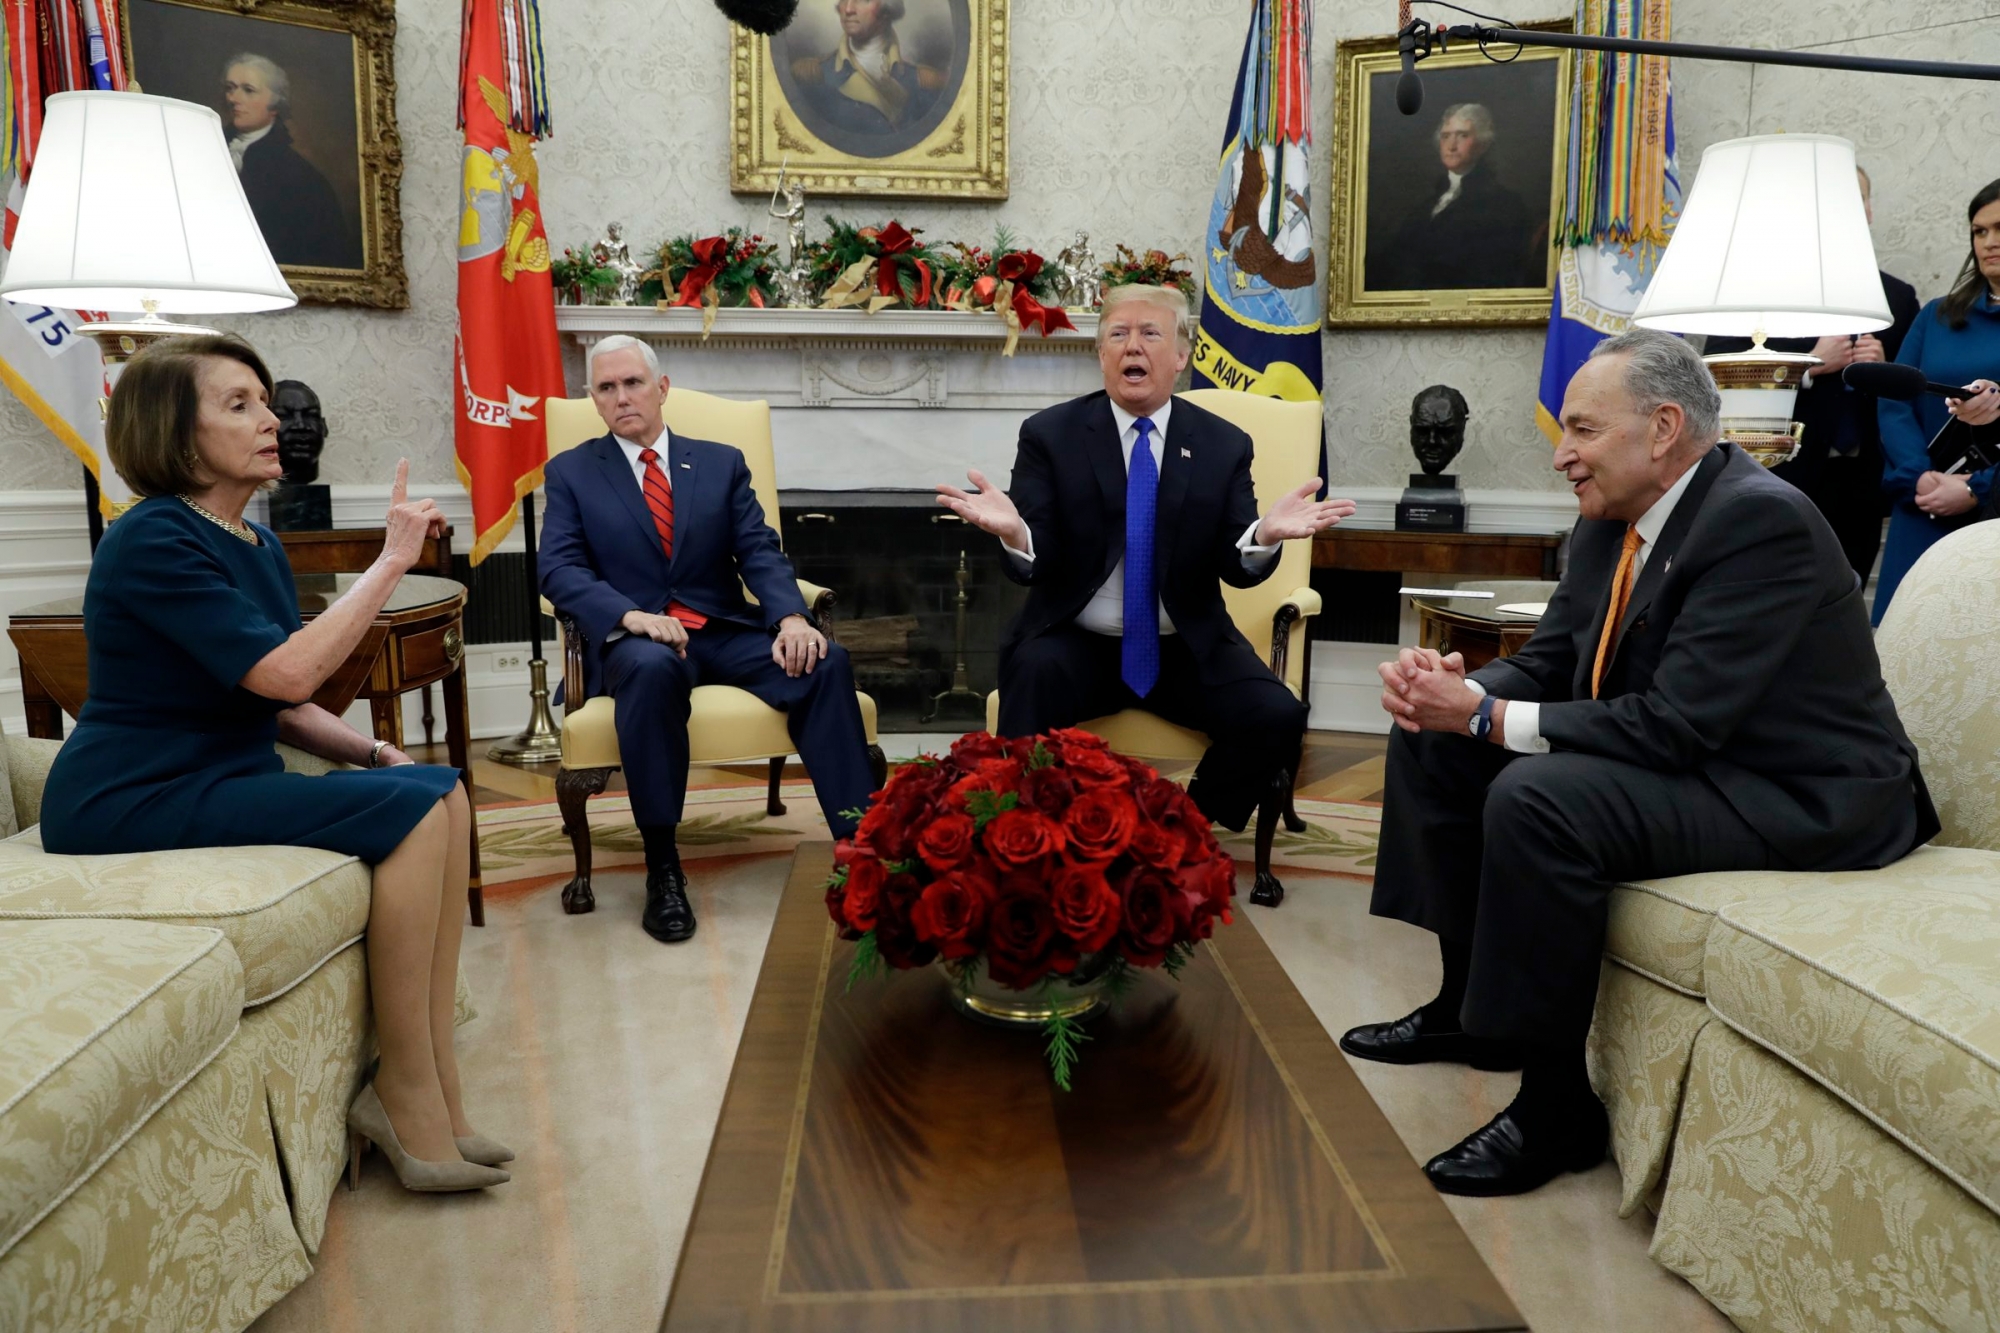 ARCHIV ñ ZUR HALBZEIT DER AMTSZEIT VON DONALD TRUMP LETZTEN SONNTAG, 20. JANUAR 2019, STELLEN WIR IHNEN FOLGENDES BILDMATERIAL ZUR VERFUEGUNG - President Donald Trump and Vice President Mike Pence meet with Senate Minority Leader Chuck Schumer, D-N.Y., and House Minority Leader Nancy Pelosi, D-Calif., in the Oval Office of the White House, Tuesday, Dec. 11, 2018, in Washington. (AP Photo/Evan Vucci) USA DONALD TRUMP HALBZEIT